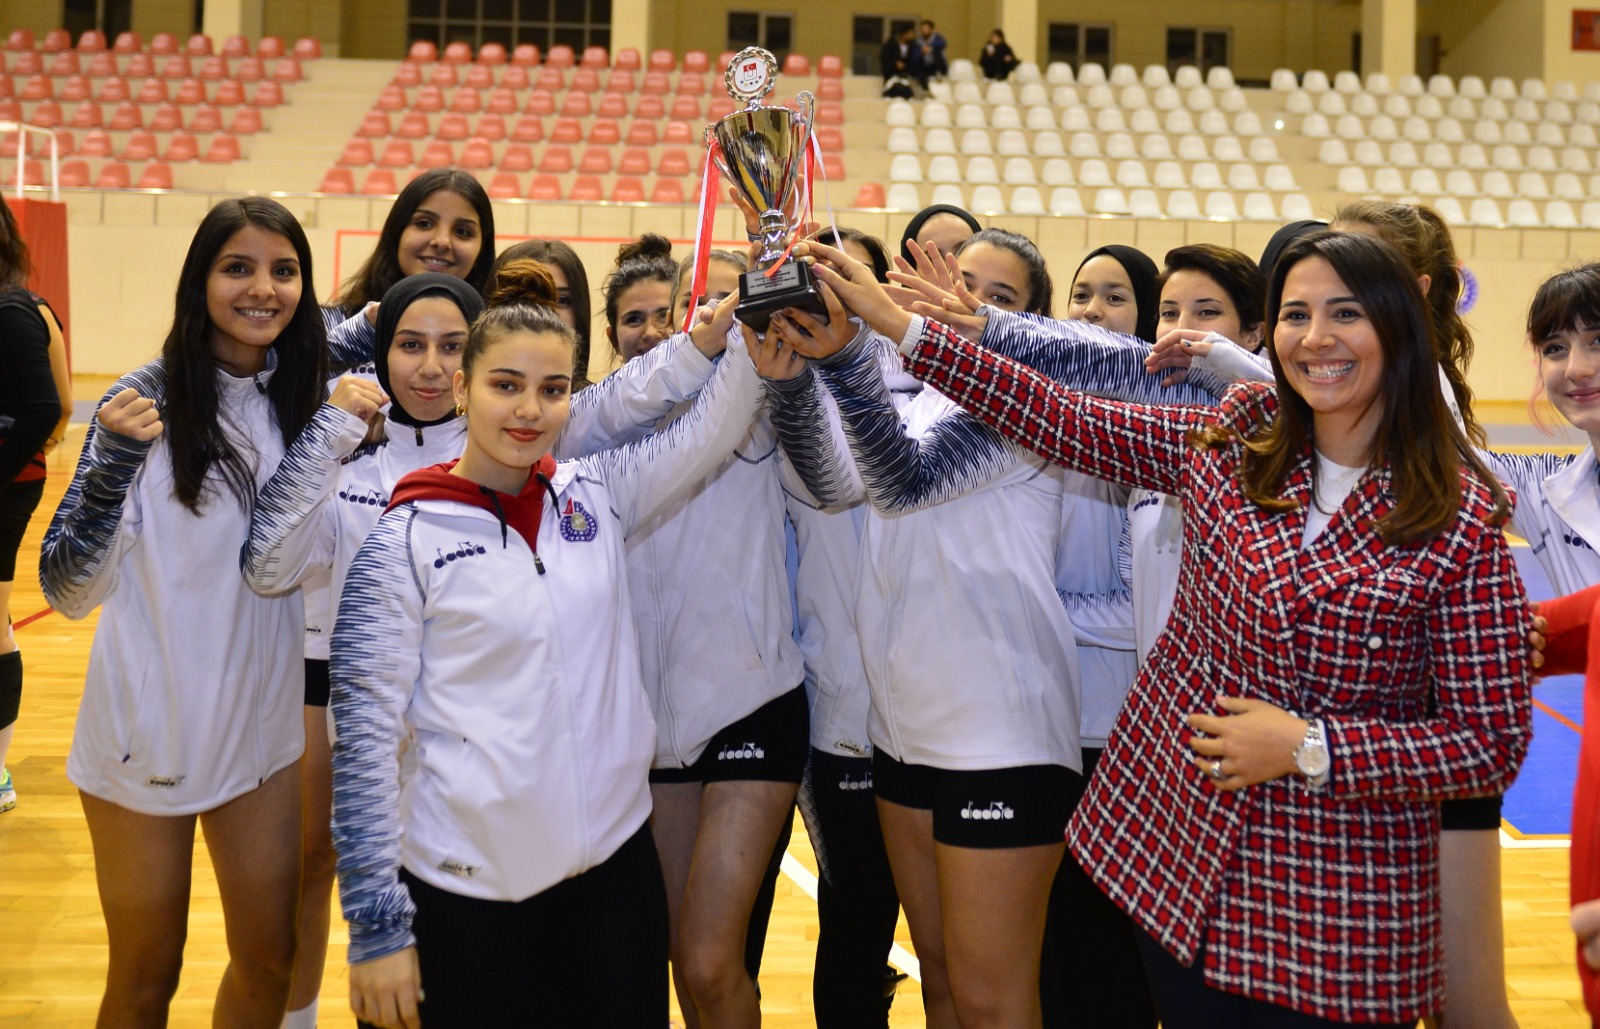 Üniversiteler Arası Voleybol Turnuvası’nda KSÜ madalyaları topladı